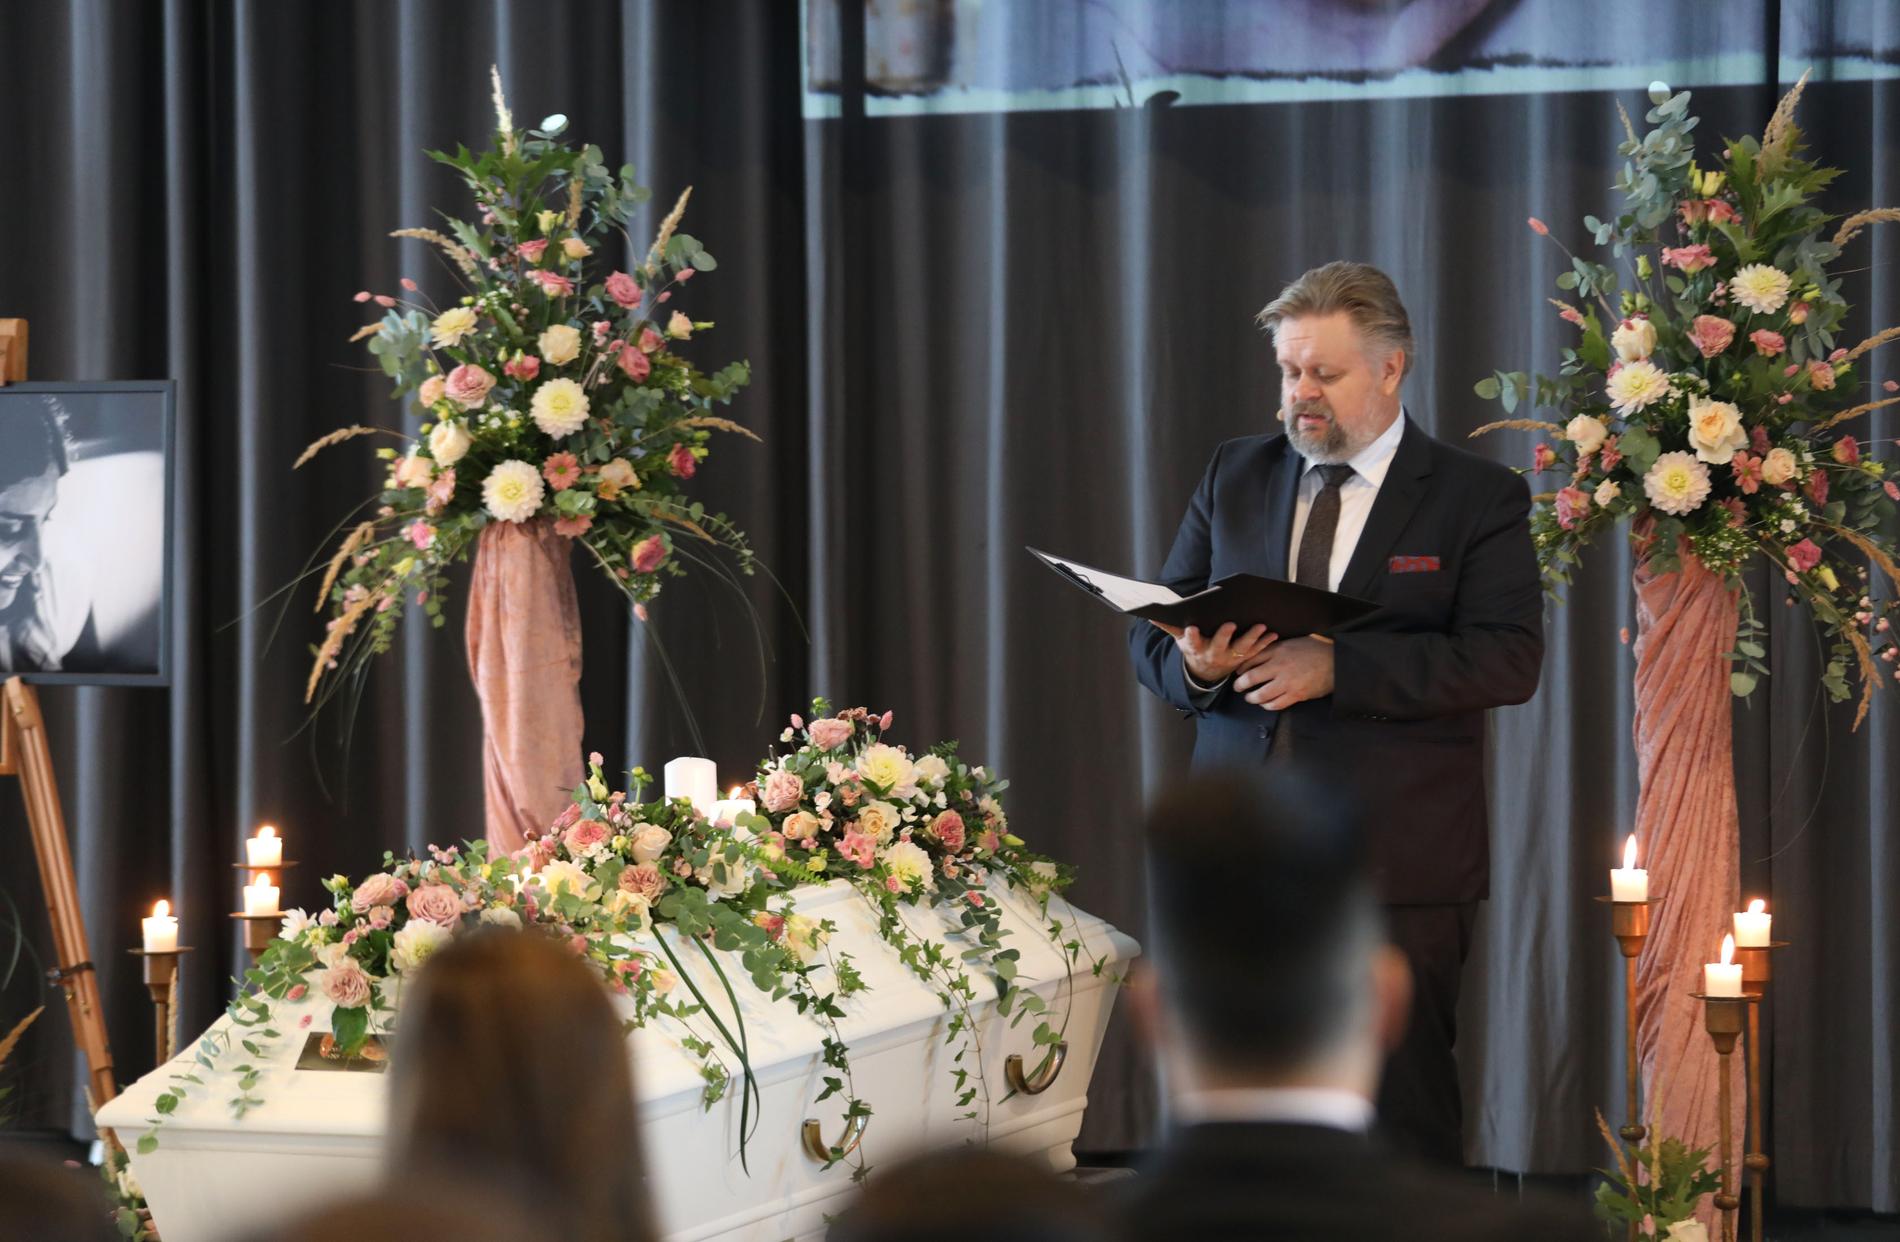 Begravningsentreprenören Jimmy Serler höll i den borgerliga ceremonin för Karolin Hakim. Han talade om ordet på allas läppar – varför. 